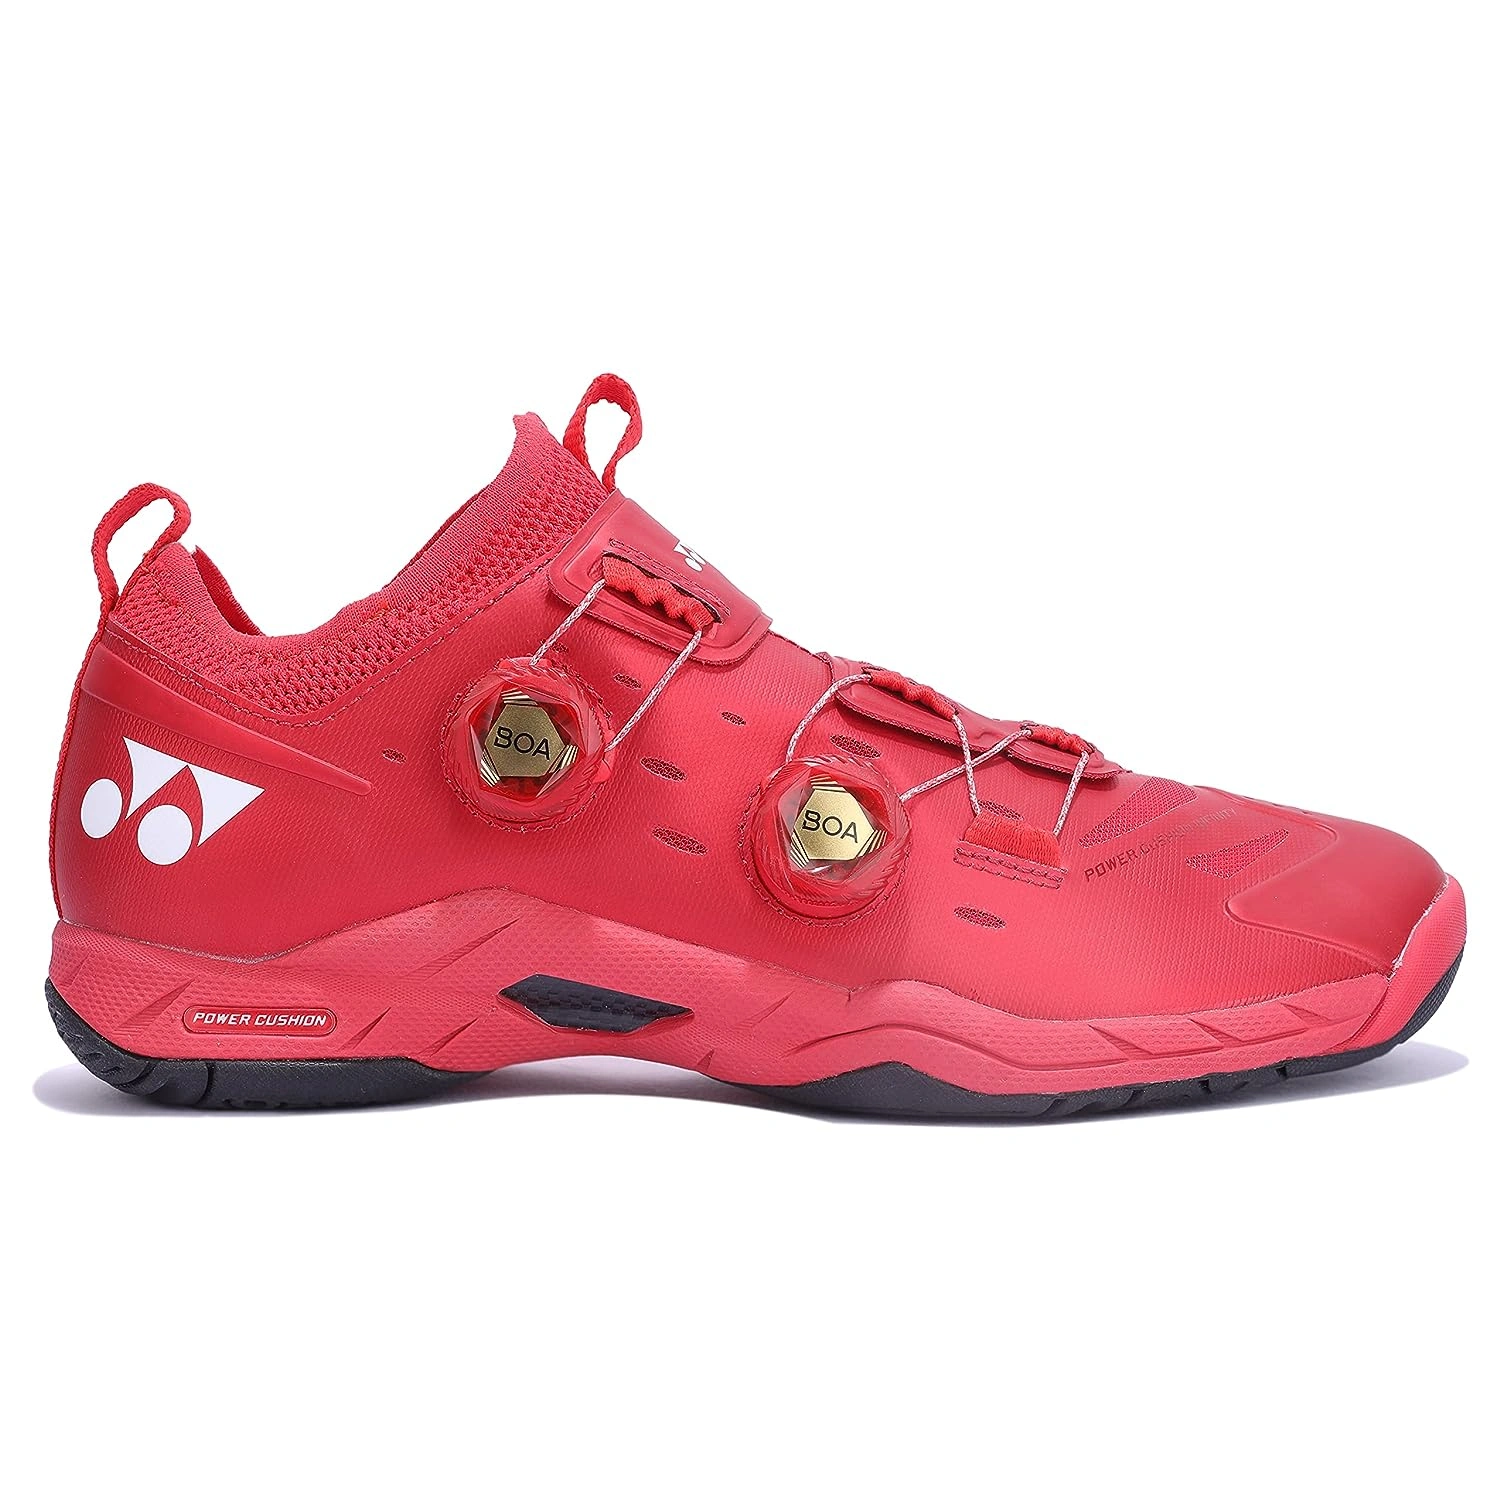 YONEX SHB Infinity 2 EX Power Cushion Badminton Shoes-METALIC RED-8.5-1